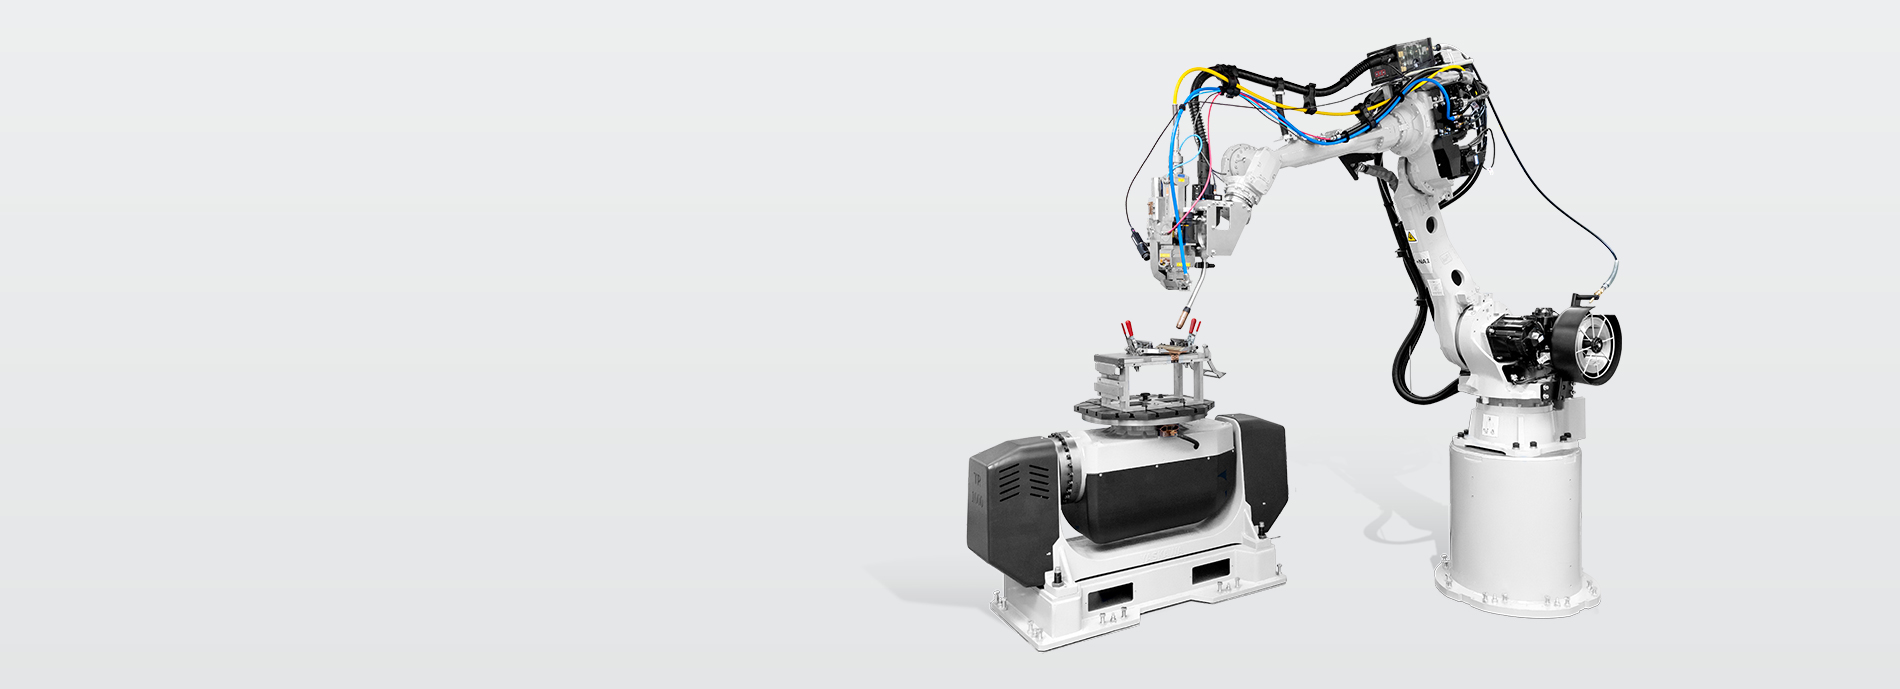 Neues SKS Roboterschweißlabor mit Laser-unterstütztem MIG-Prozess